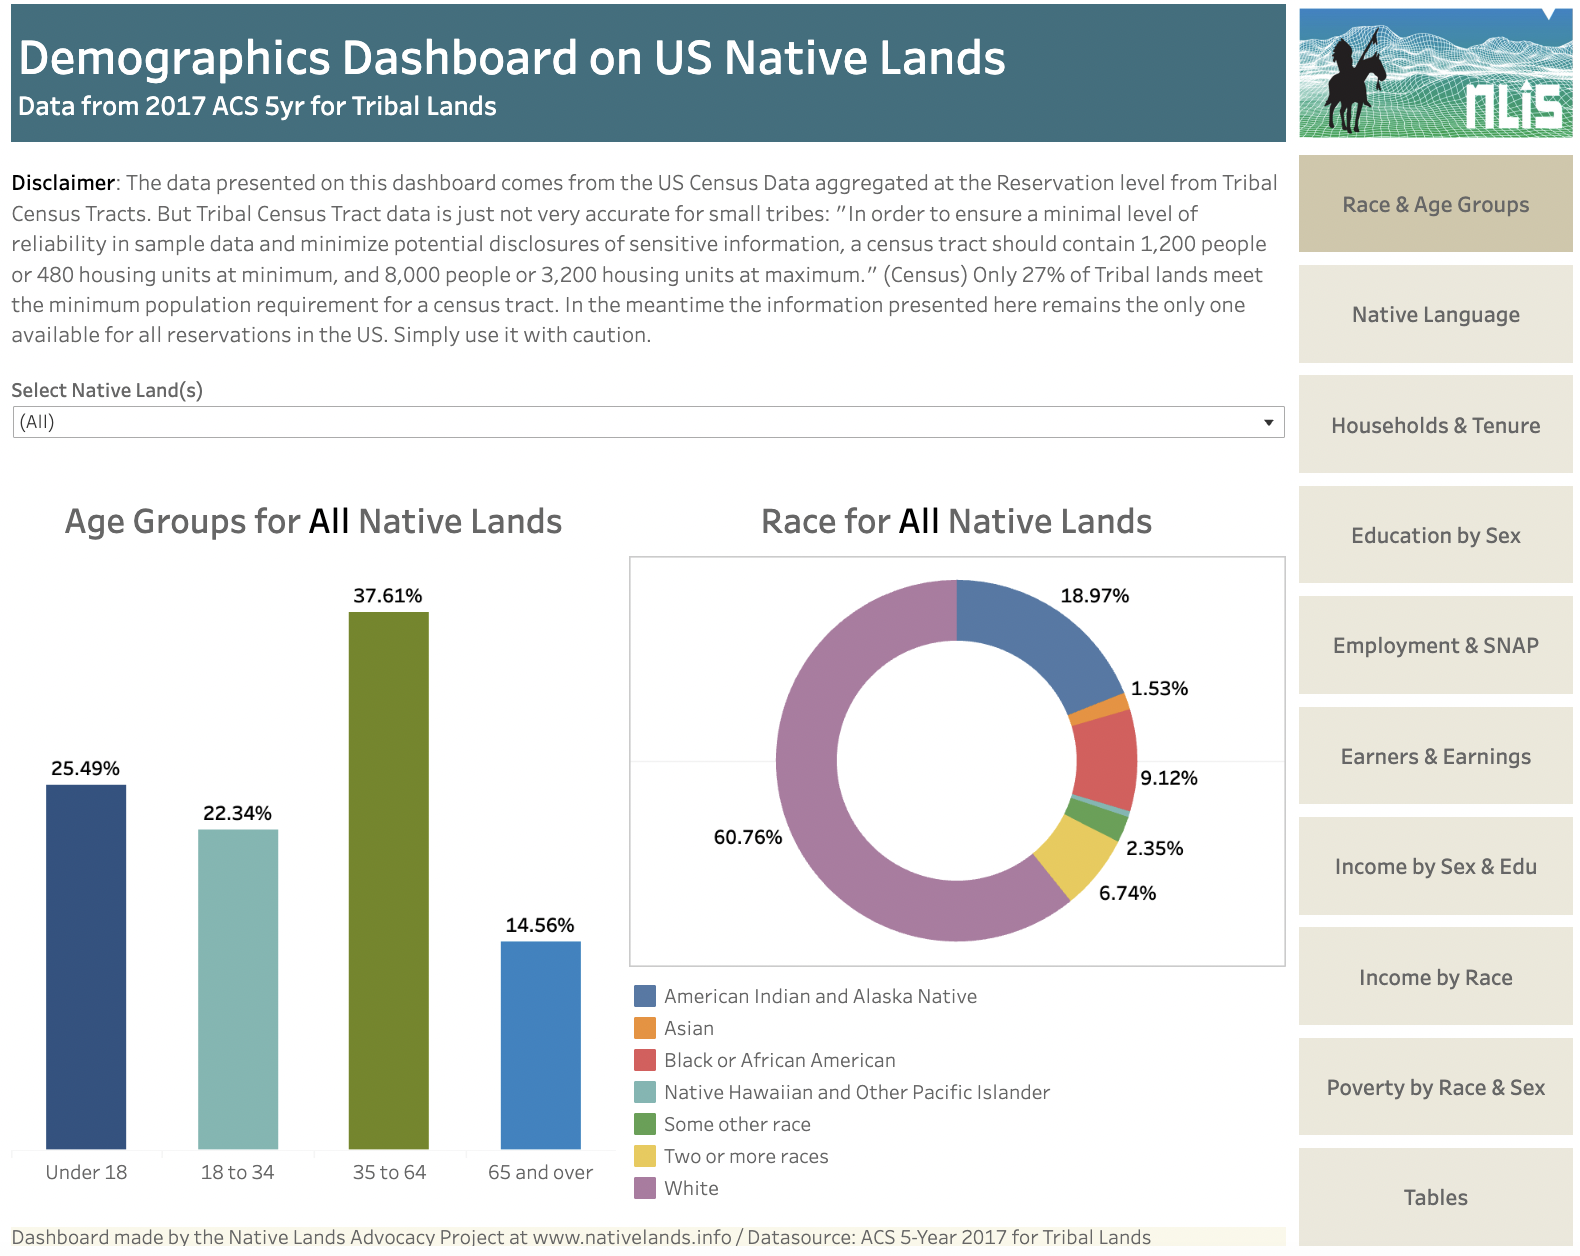 Demographics Dashboard for US Native Lands